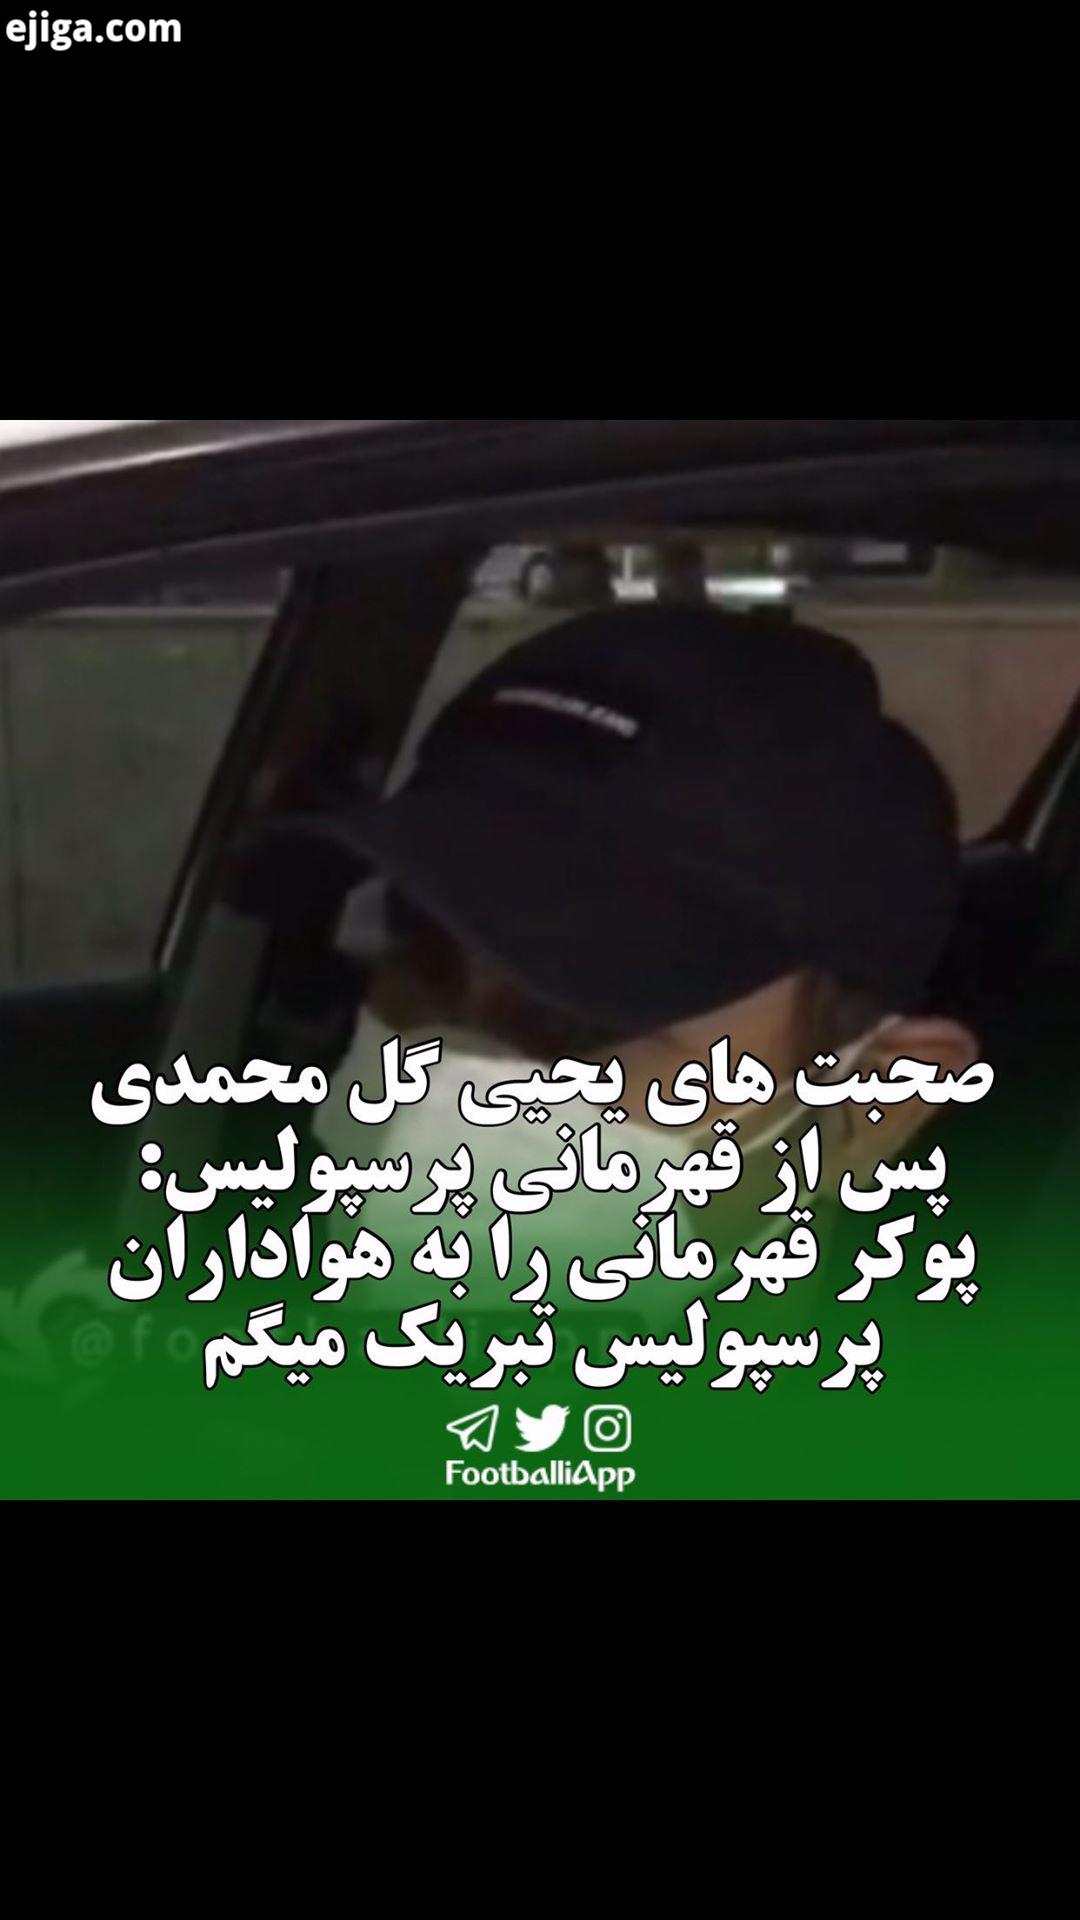 گفت گو با یحیی گل محمدی سرمربی پرسپولیس پس از ورود کاروان پرسپولیس به تهران درباره قهرمانی این تیم